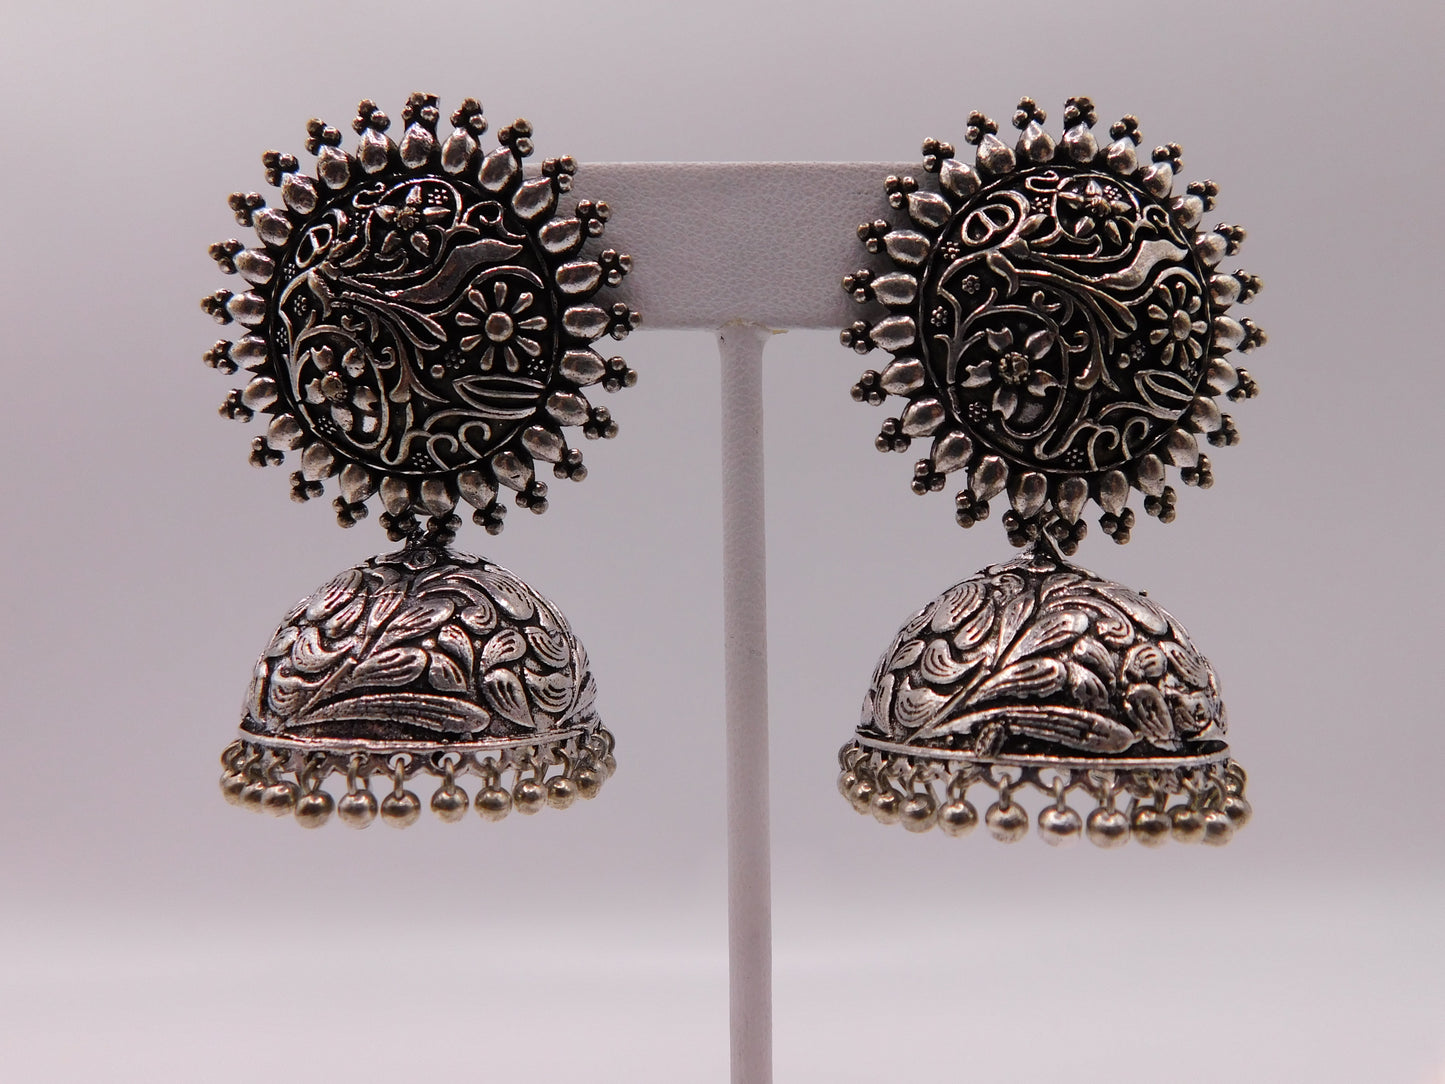 Kina oxidized earrings